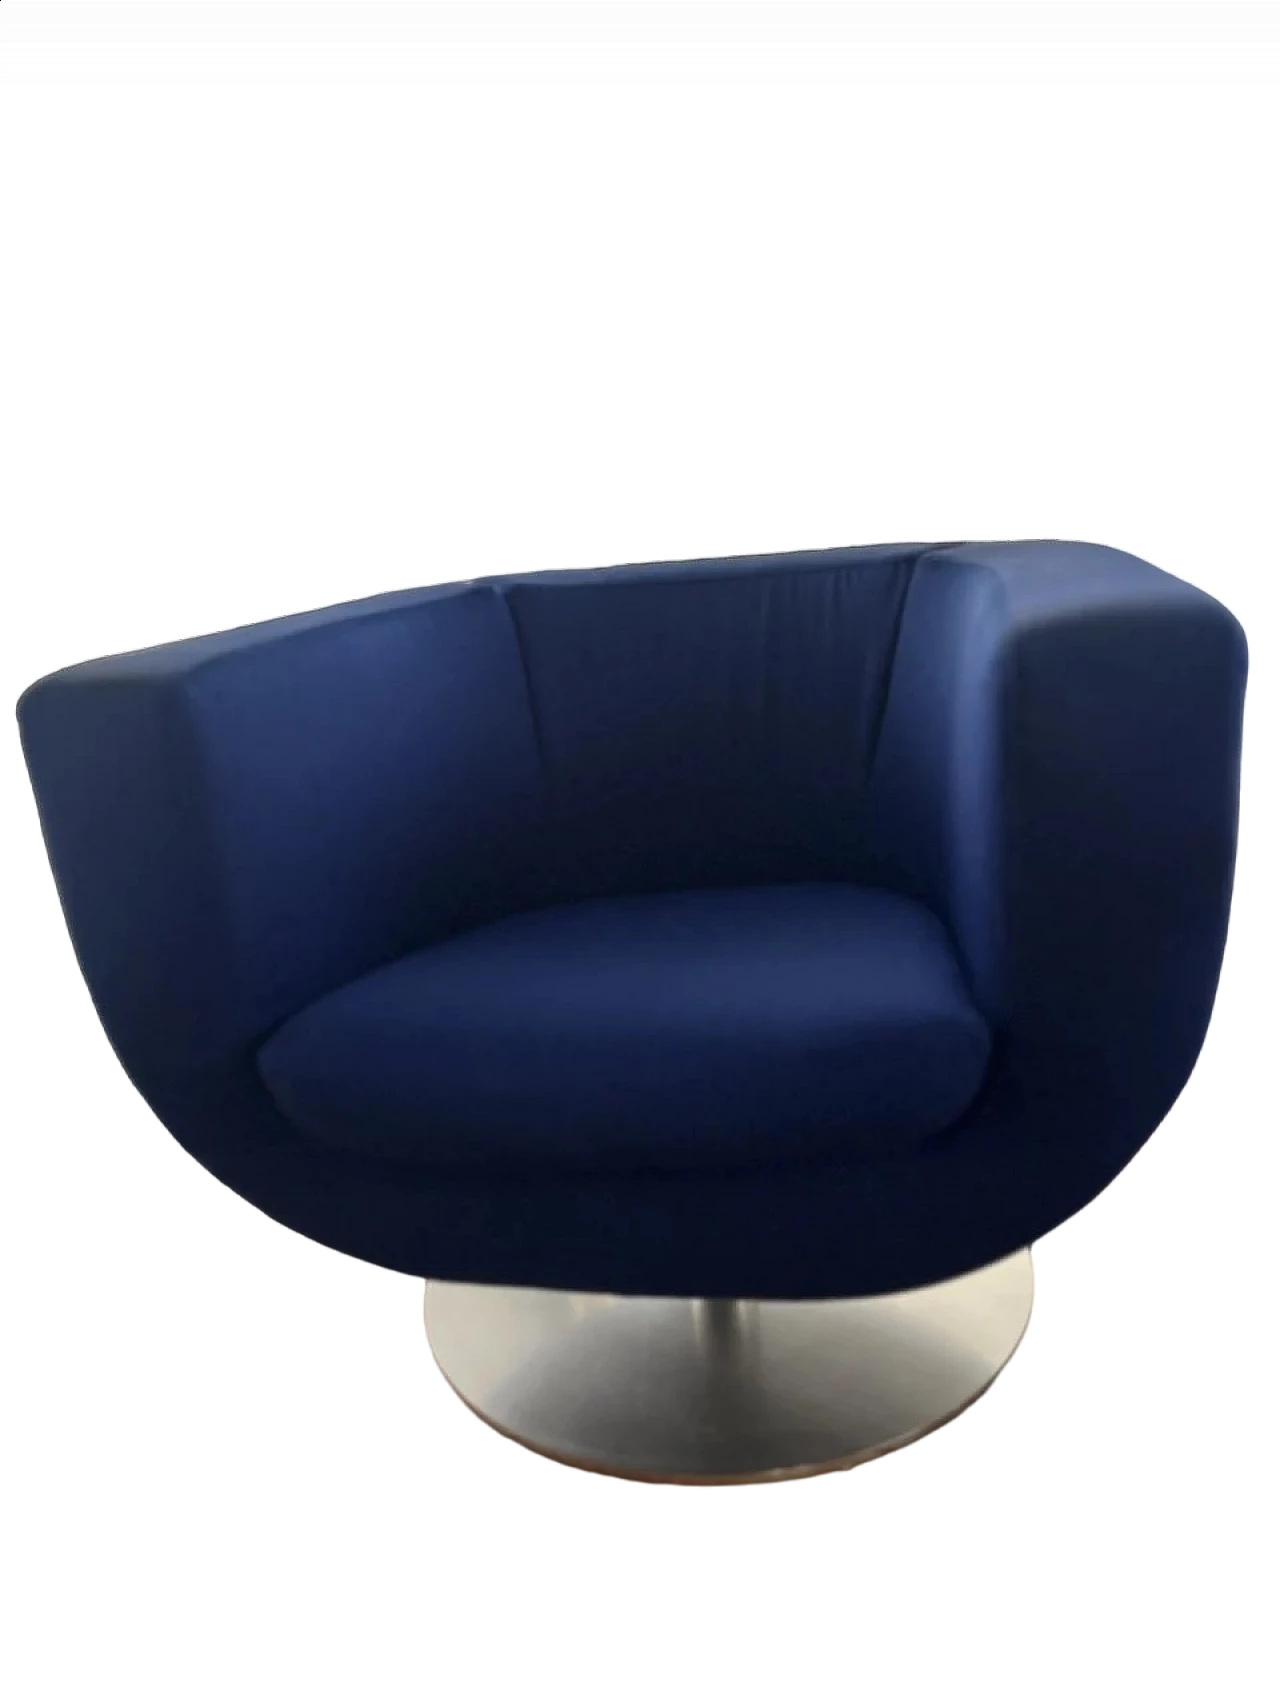 Blue Tulip swivel armchair by Jeffrey Bernett for B&B, 2008 8